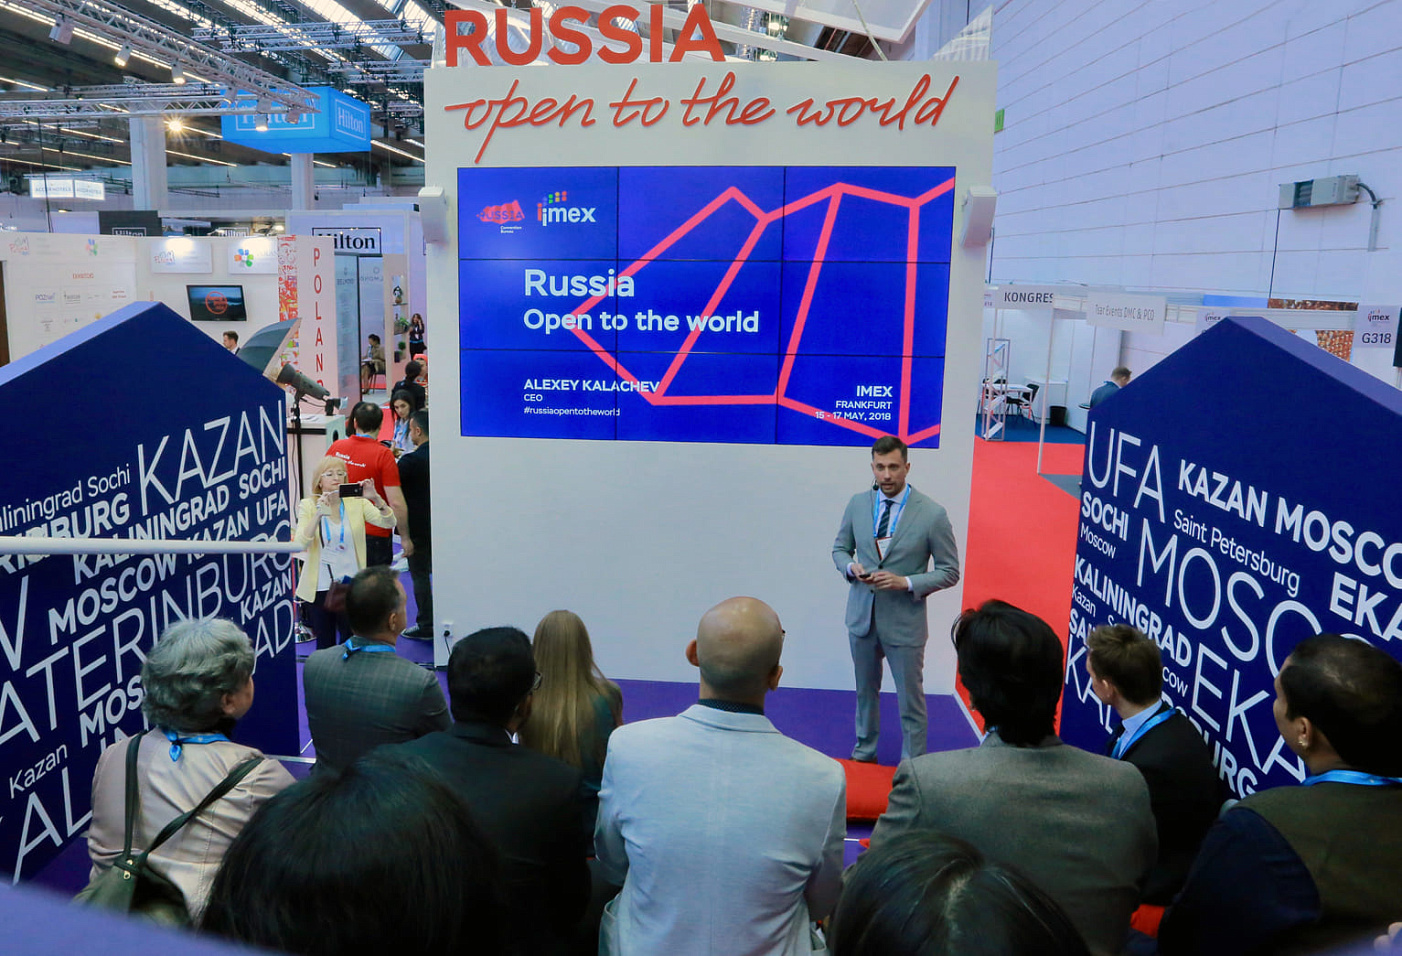 Национальное конгресс-бюро представит Россию на международной выставке событийной индустрии IMEX 2019